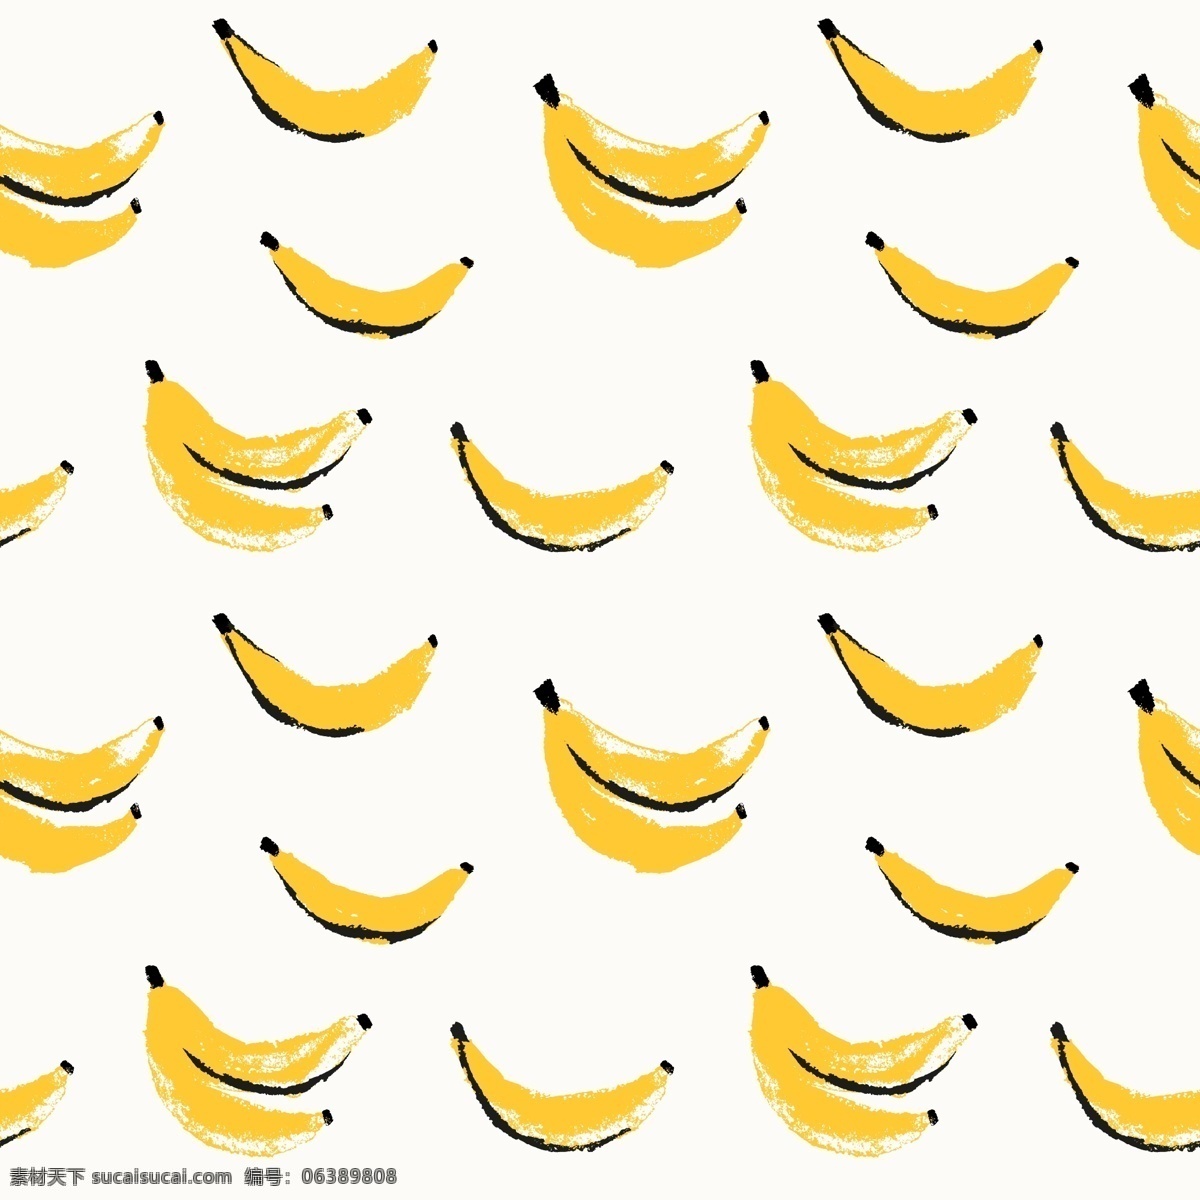 香蕉图案设计 背景 图案 食物 水果 墙纸 颜色 丰富多彩 无缝的图案 香蕉 图案背景 无缝 彩色背景 彩色